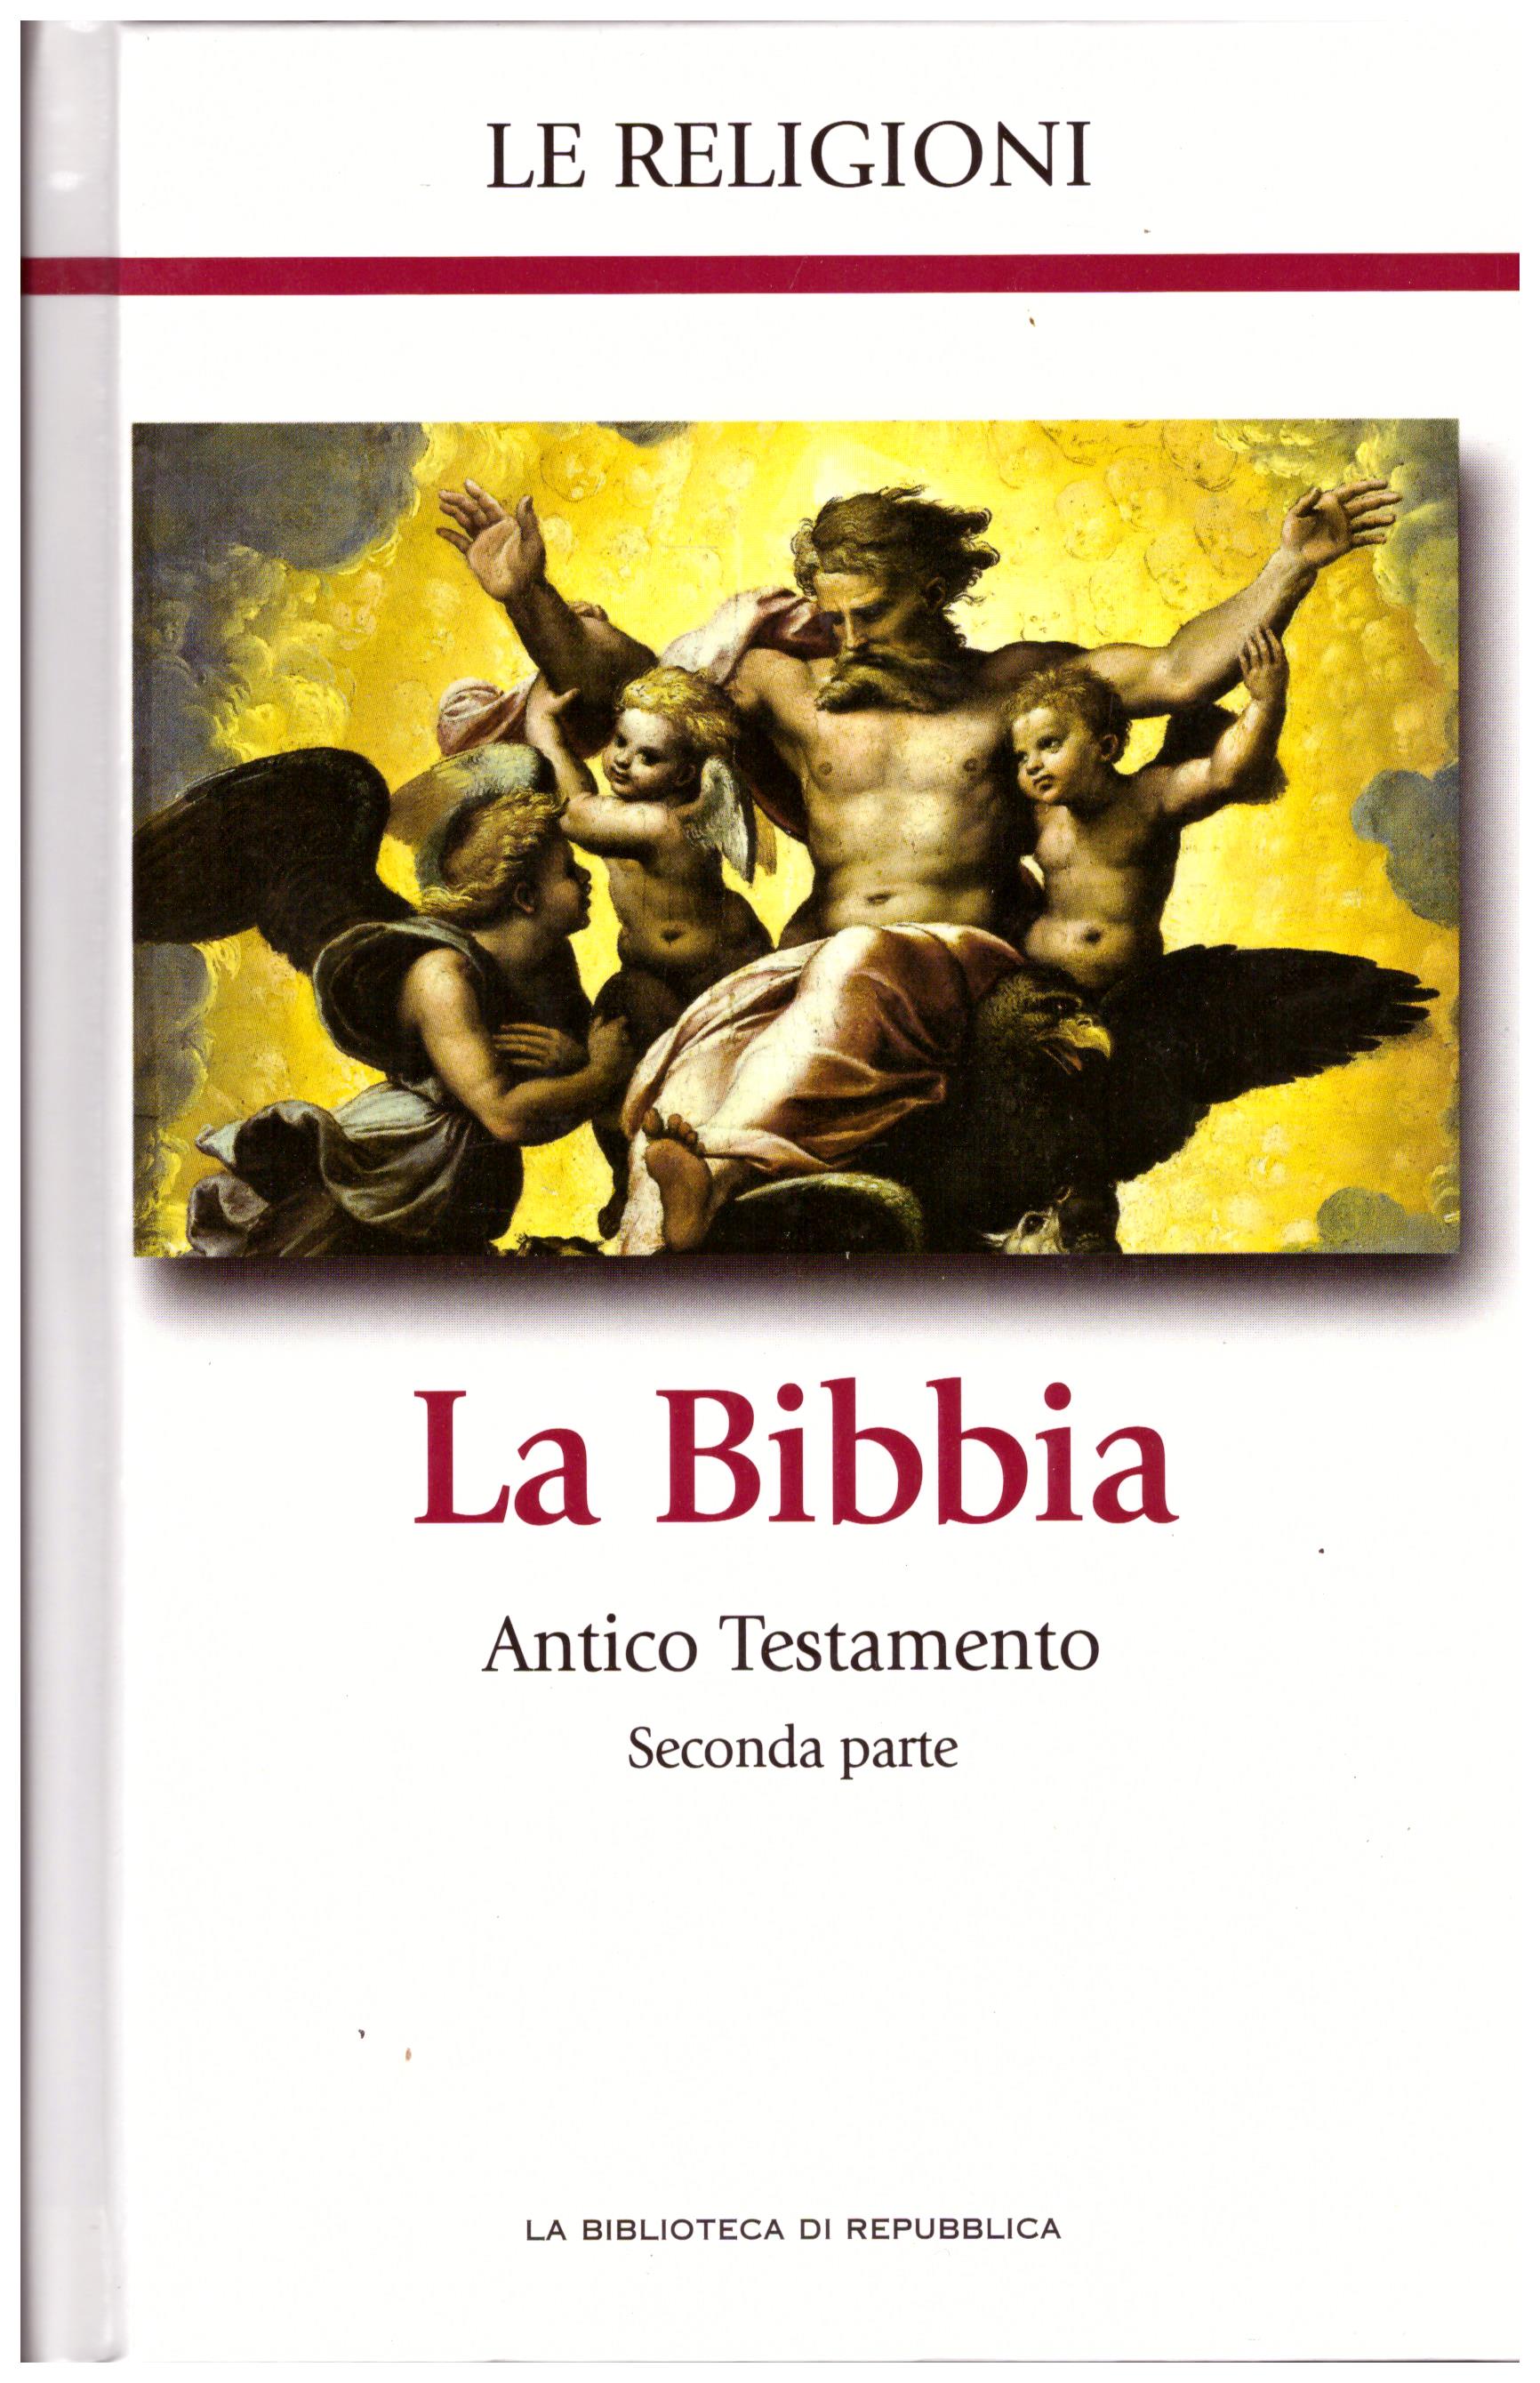 Titolo: Le religioni, La Bibbia Antico testamento seconda parte N.2      Autore: AA.VV, la biblioteca di Repubblica     Editore: Piemme